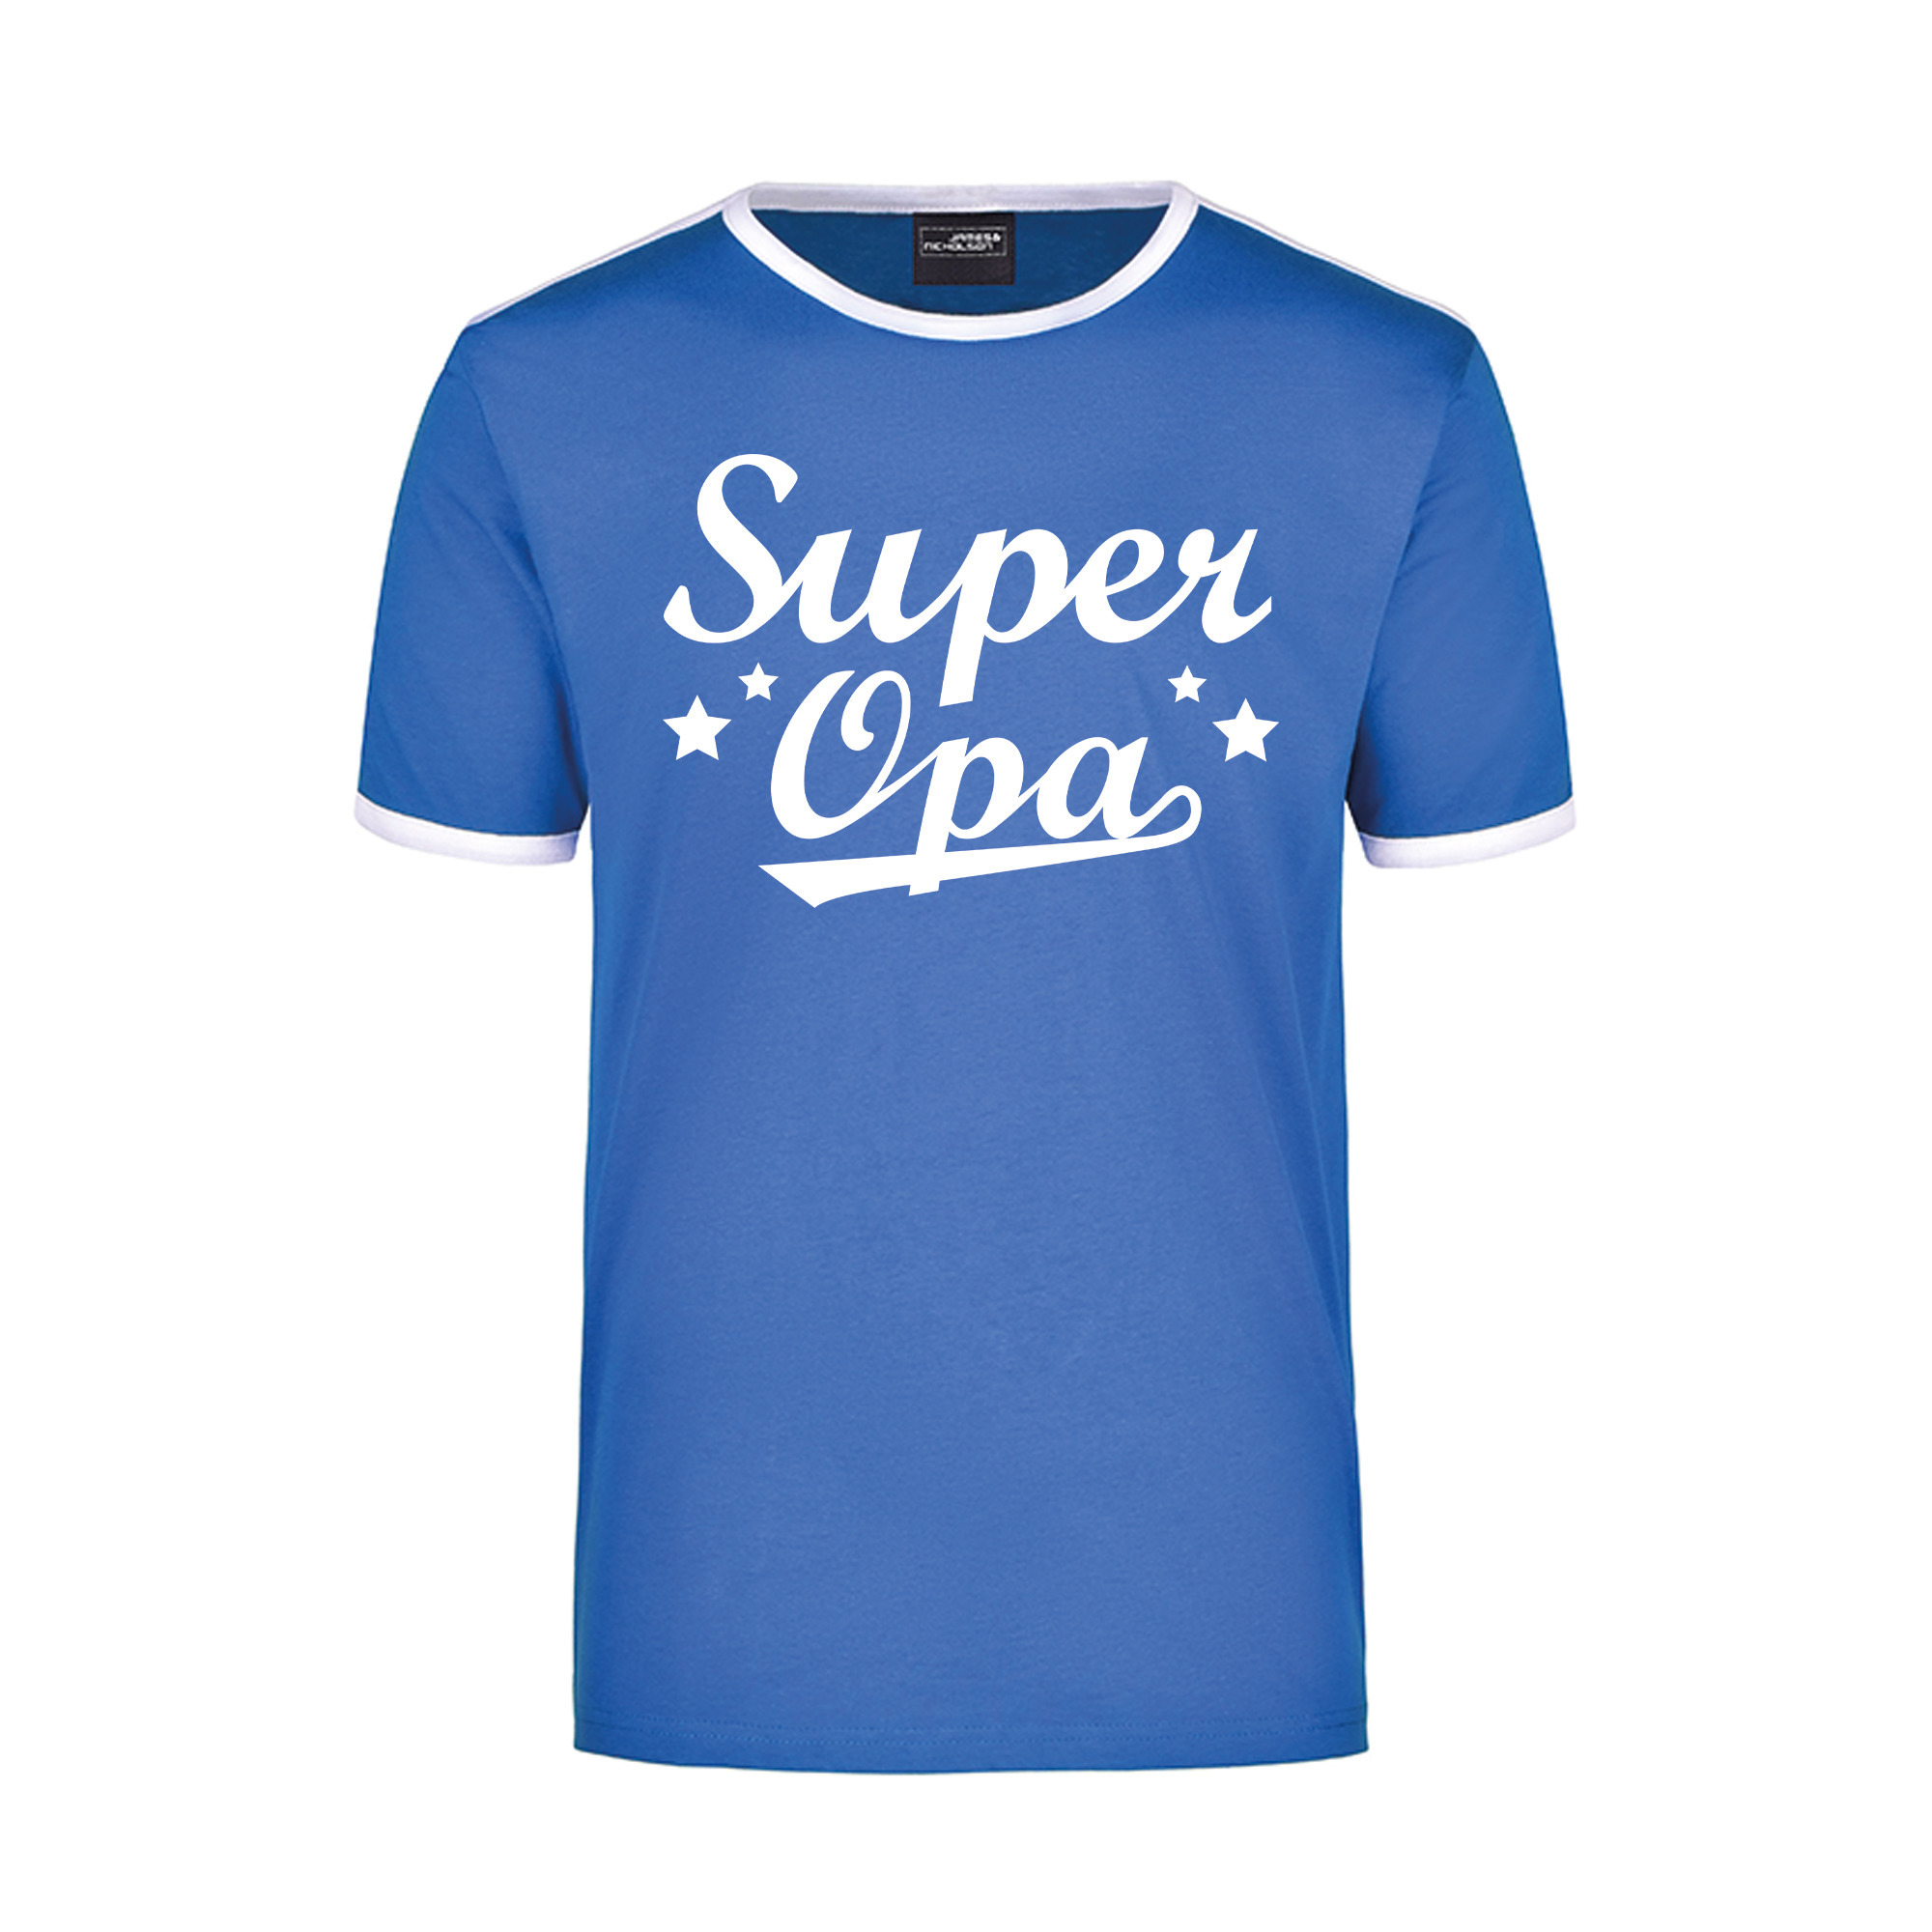 Super opa blauw/wit ringer t-shirt voor heren